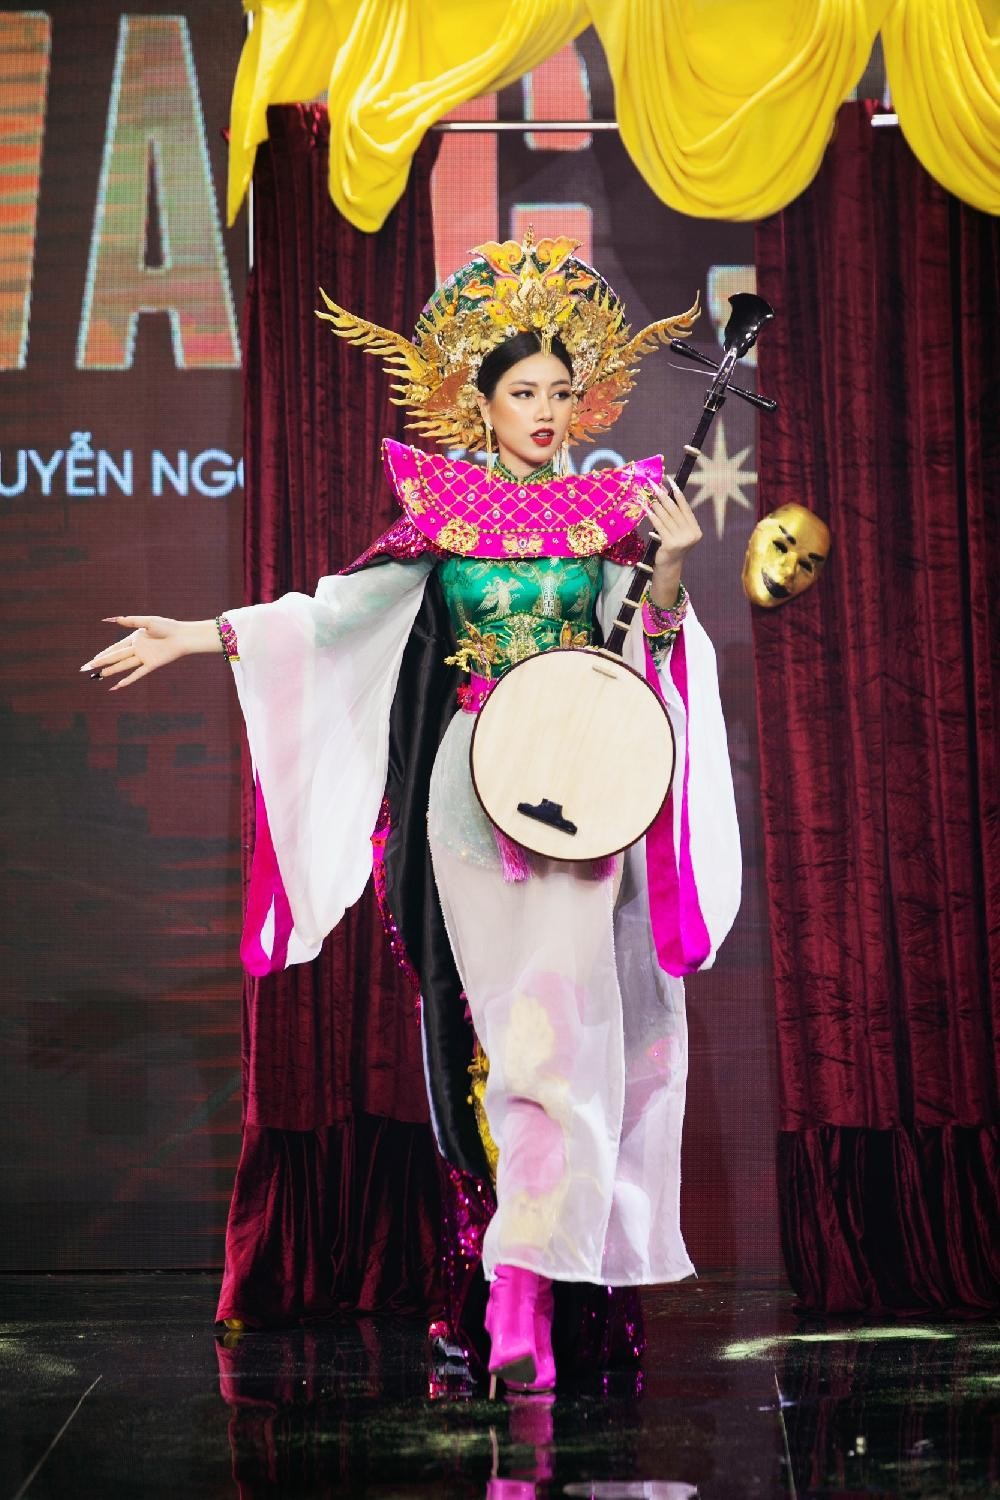 Thiết kế nào được chọn làm Trang phục Dân tộc cho tân Hoa hậu Hoàn vũ Việt Nam? ảnh 12